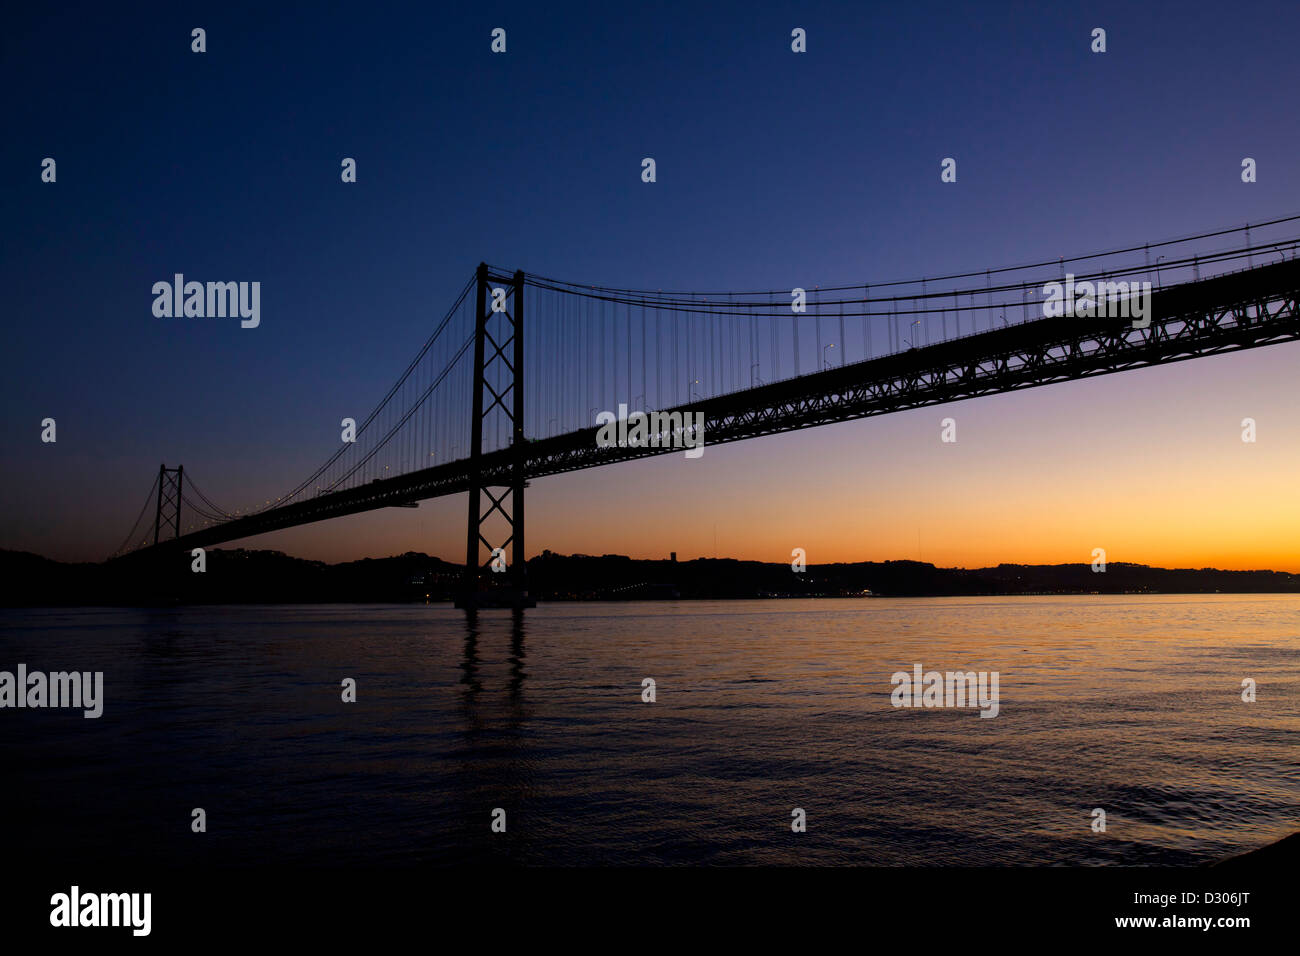 25 th April bridge on theTagus river, Lisbon, Portugal. Stock Photo